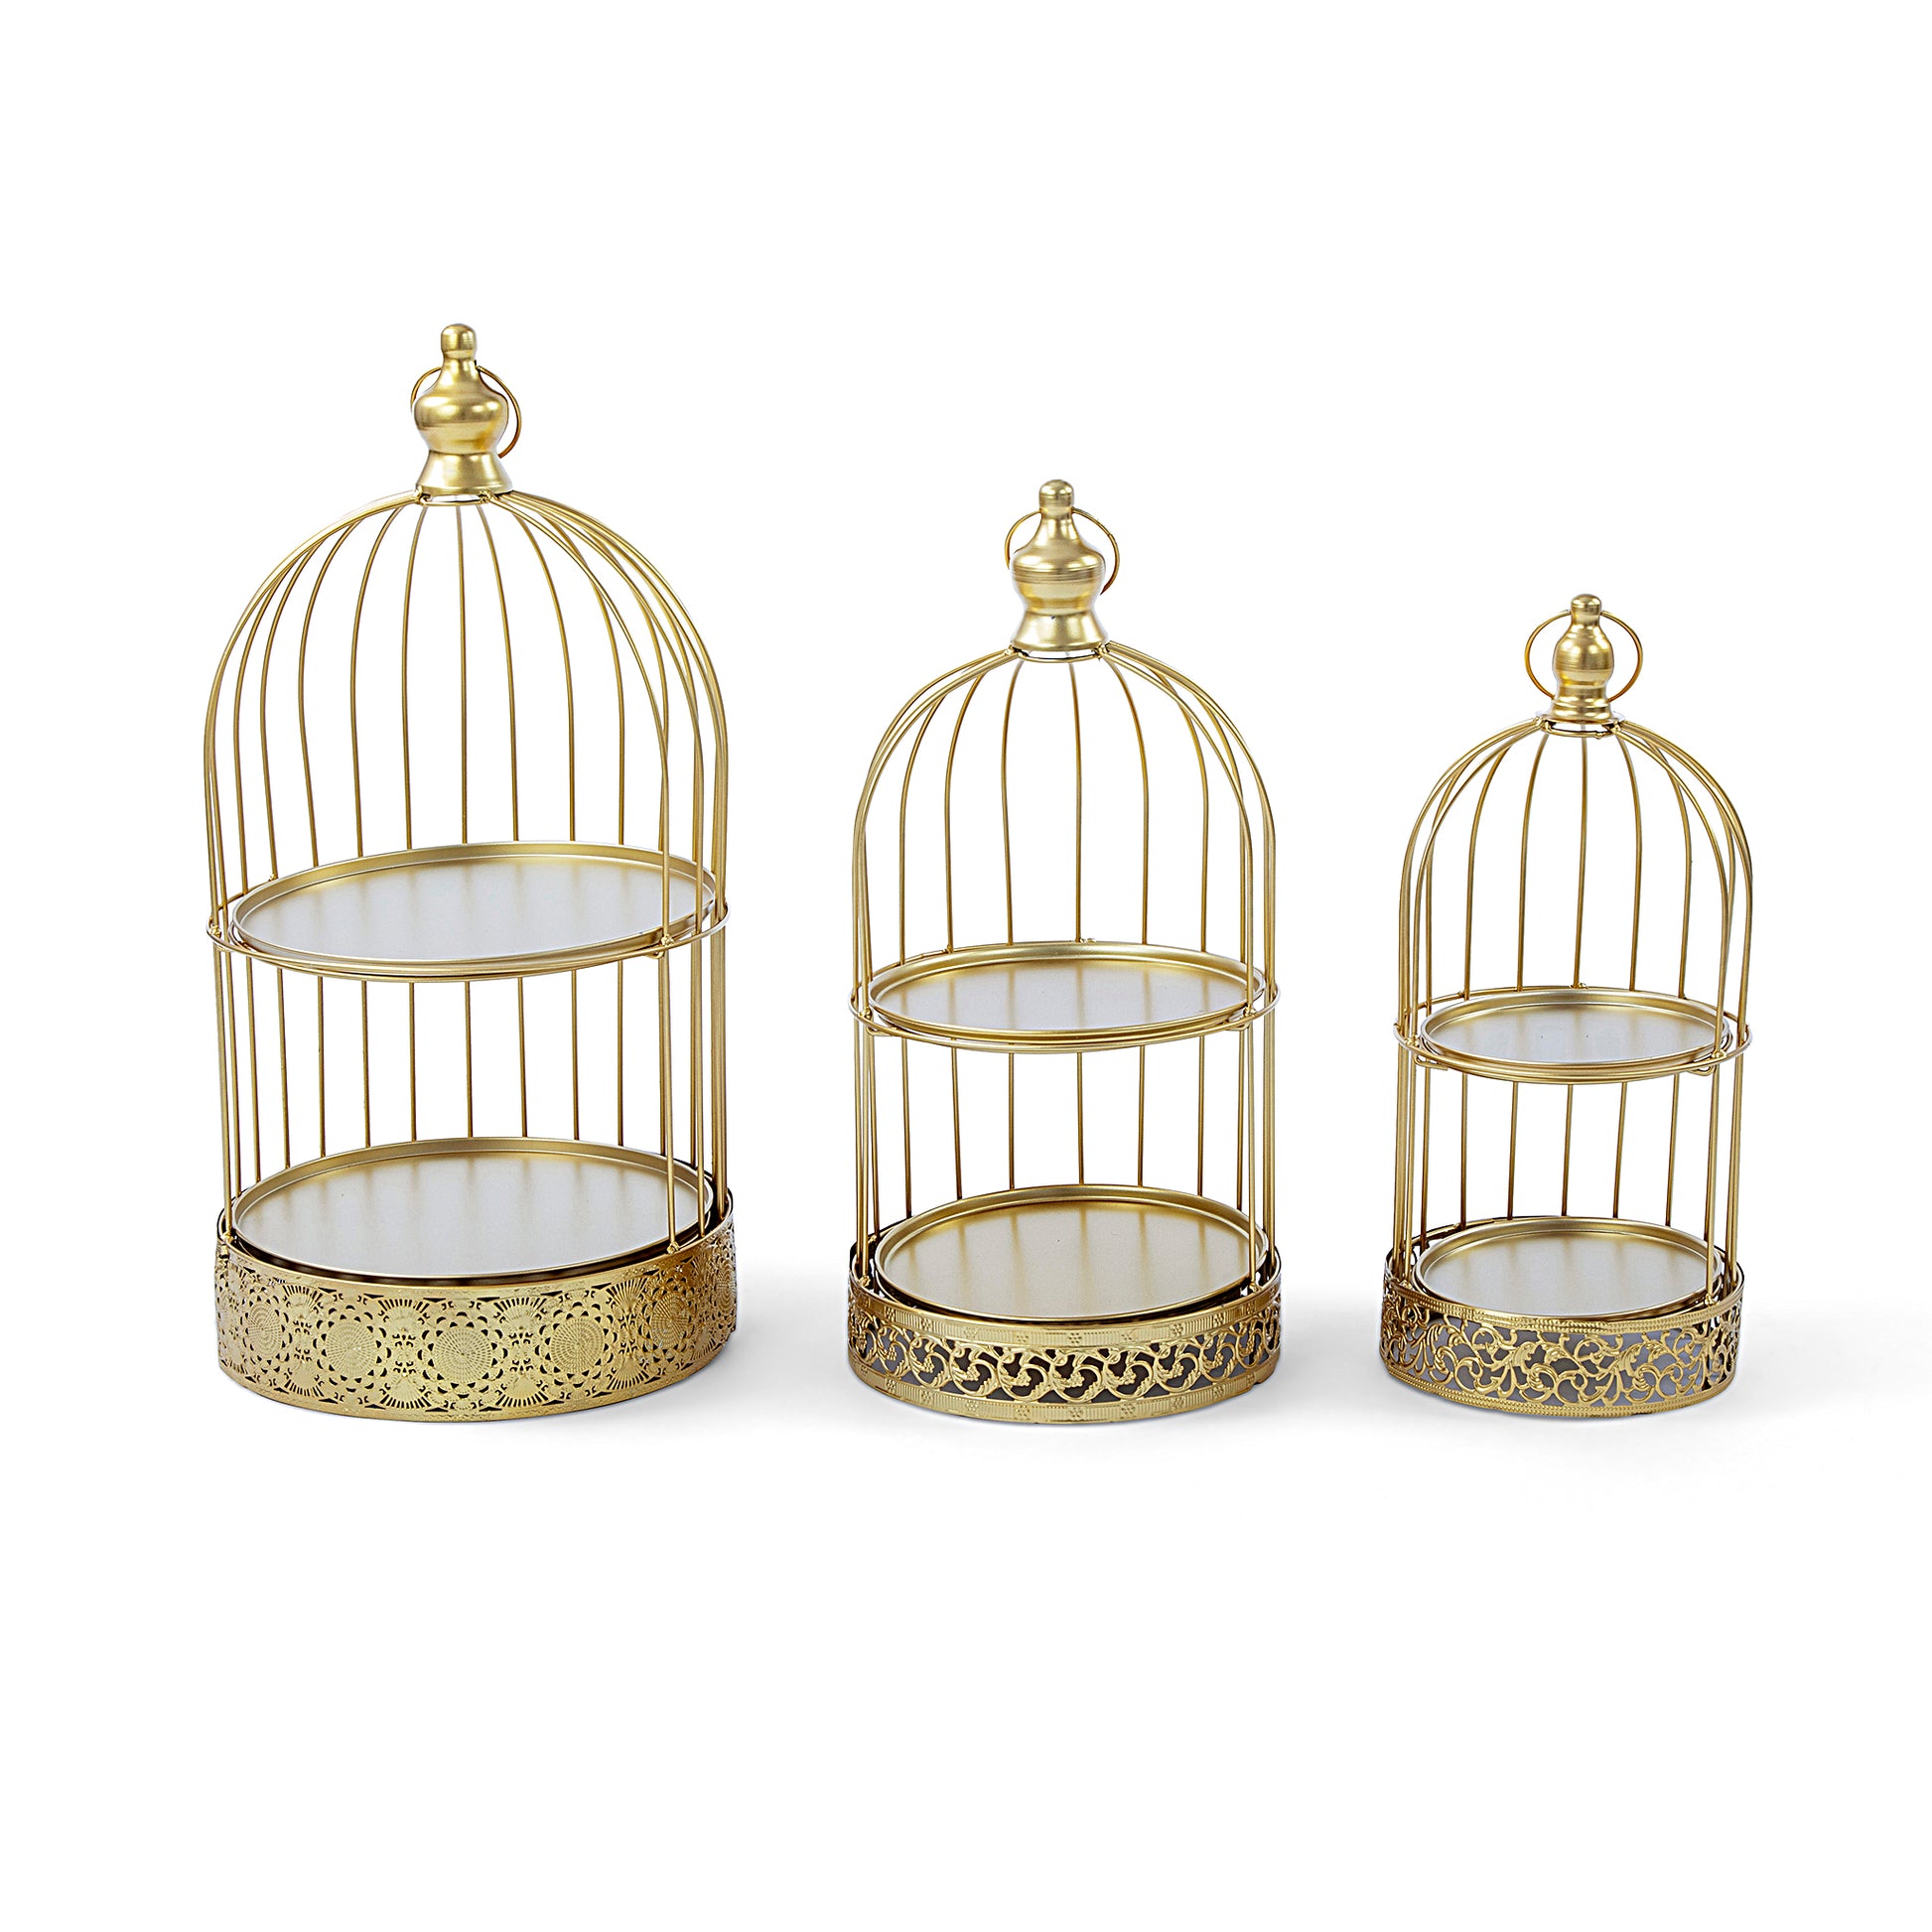 2-Tier Bird Cage Dessert Cupcake Metal Stands (3pc/set) - Gold - CV Linens